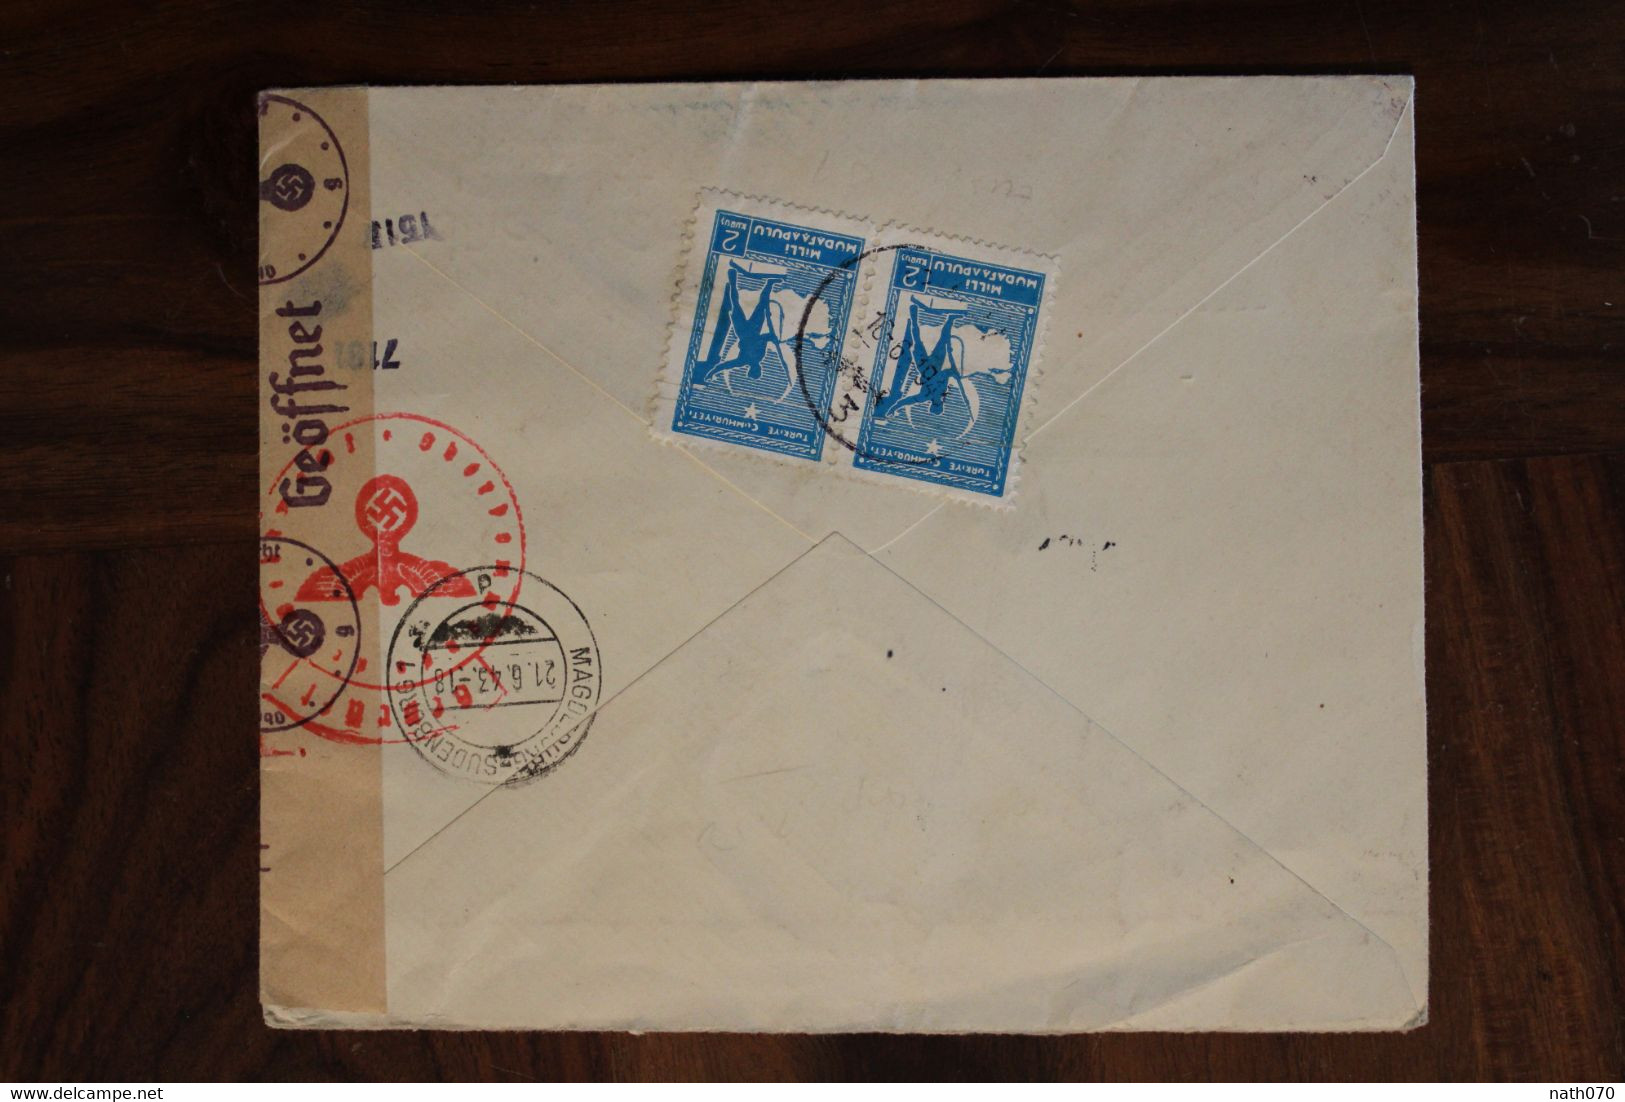 Turquie 1943 OKW Censure Türkei Air Mail Cover Enveloppe Paire Par Avion Allemagne Turkey Türkiye Ww2 Wk2 - Cartas & Documentos